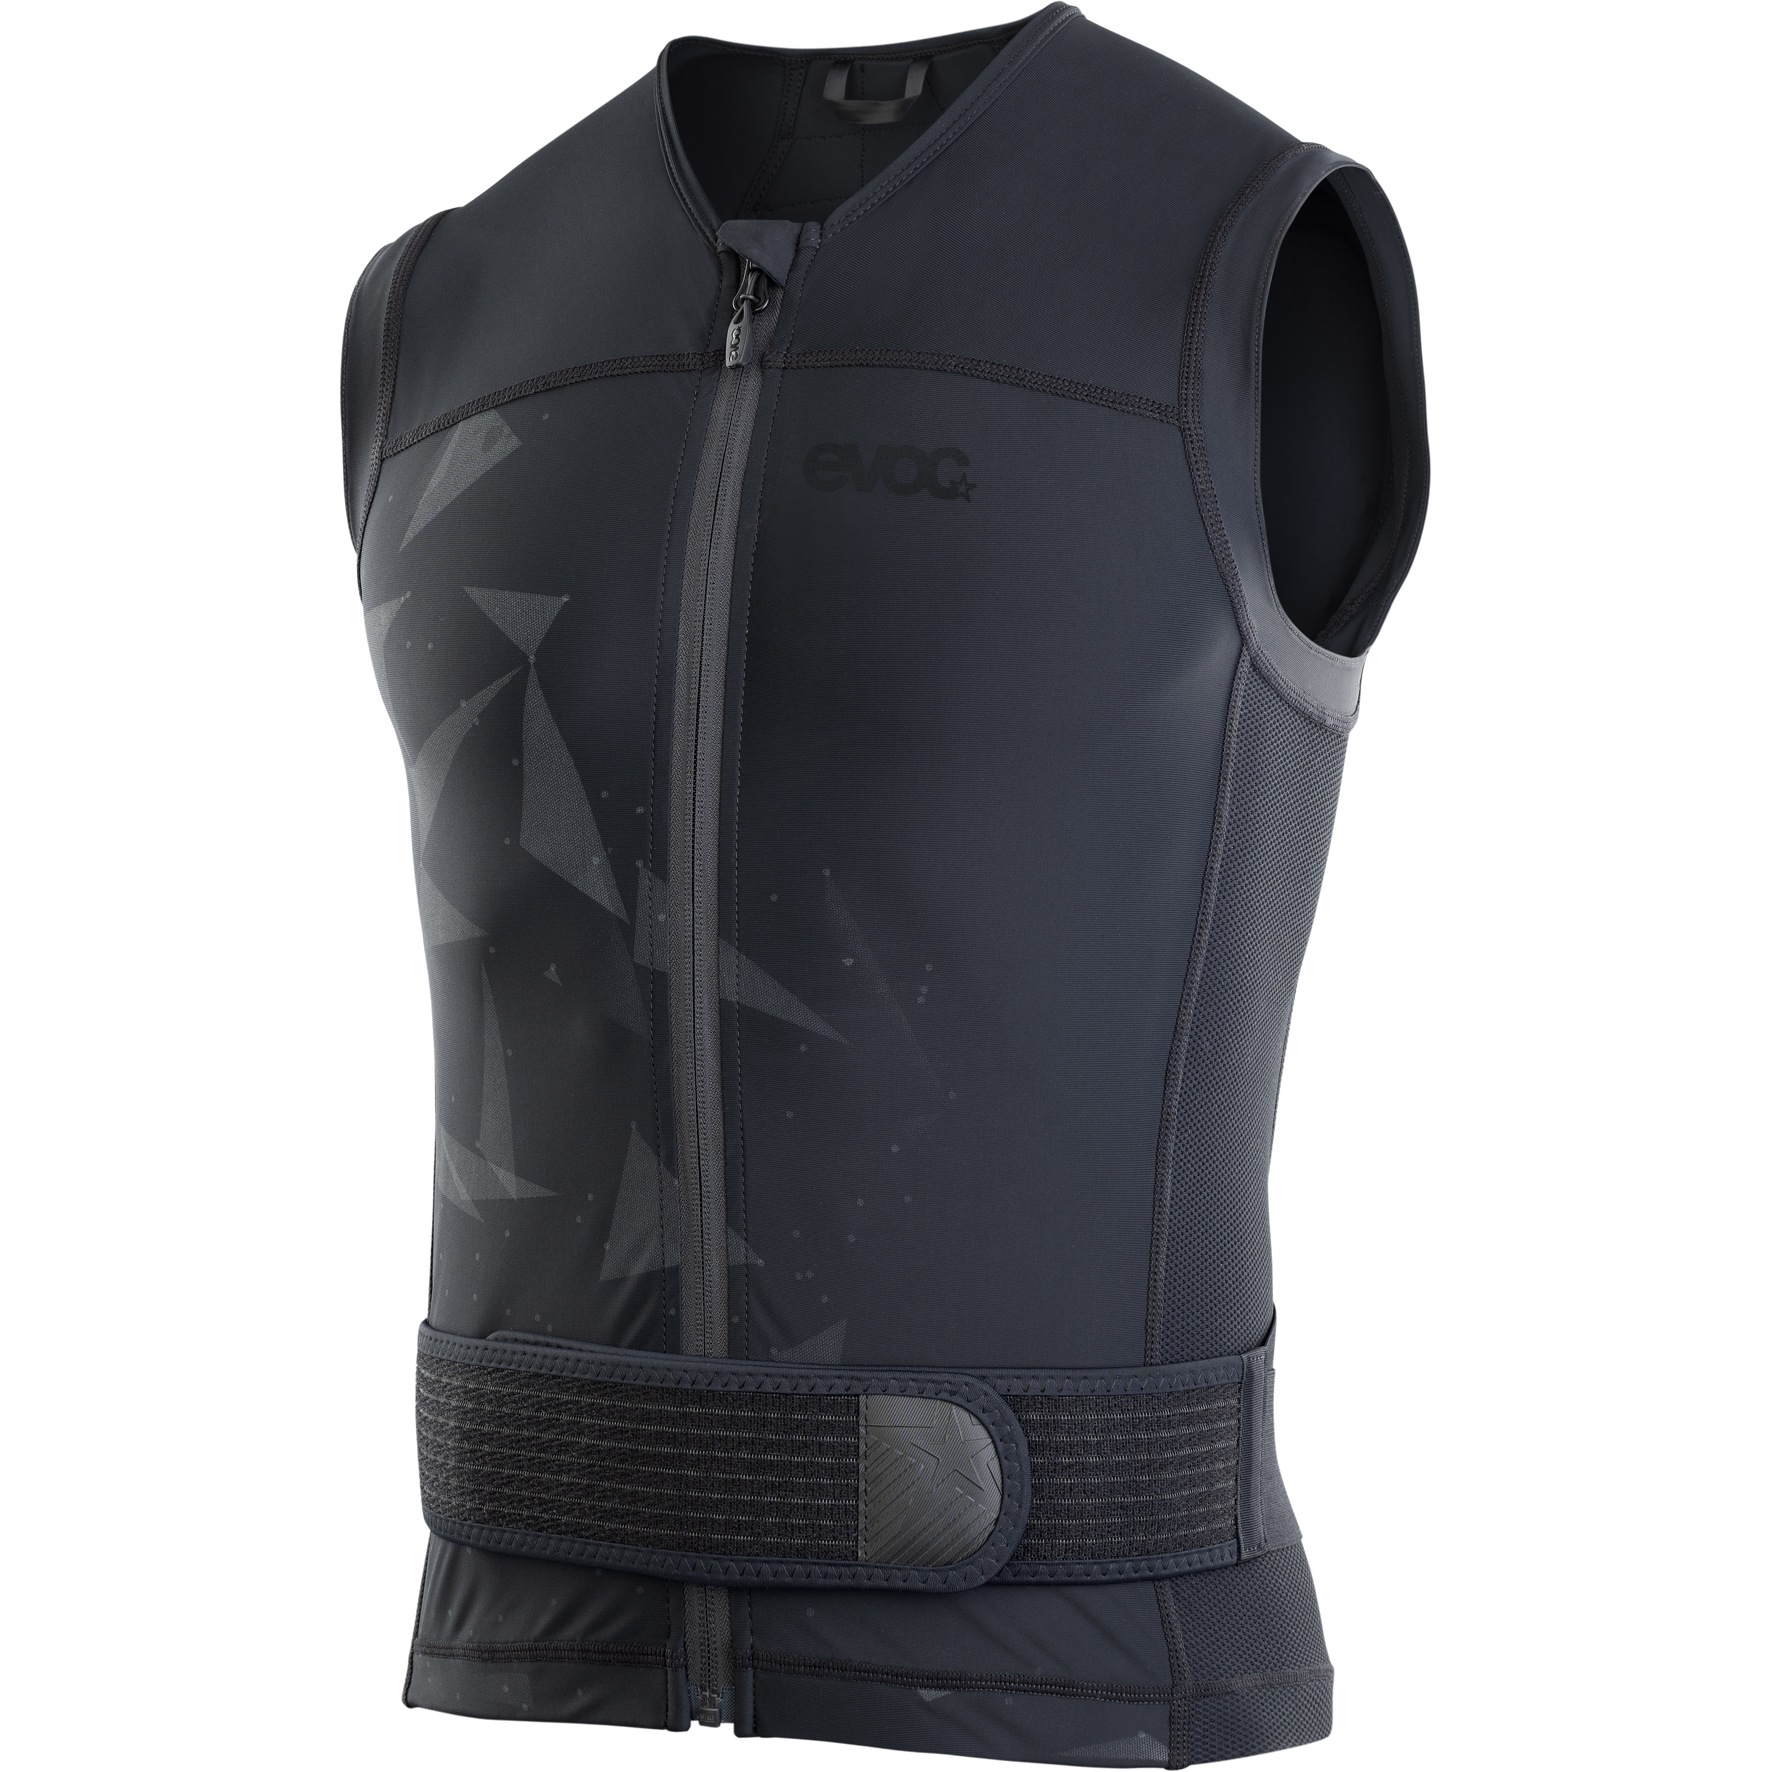 Productfoto van EVOC Protector Vest Pro Bovenlichaam Protector - Zwart